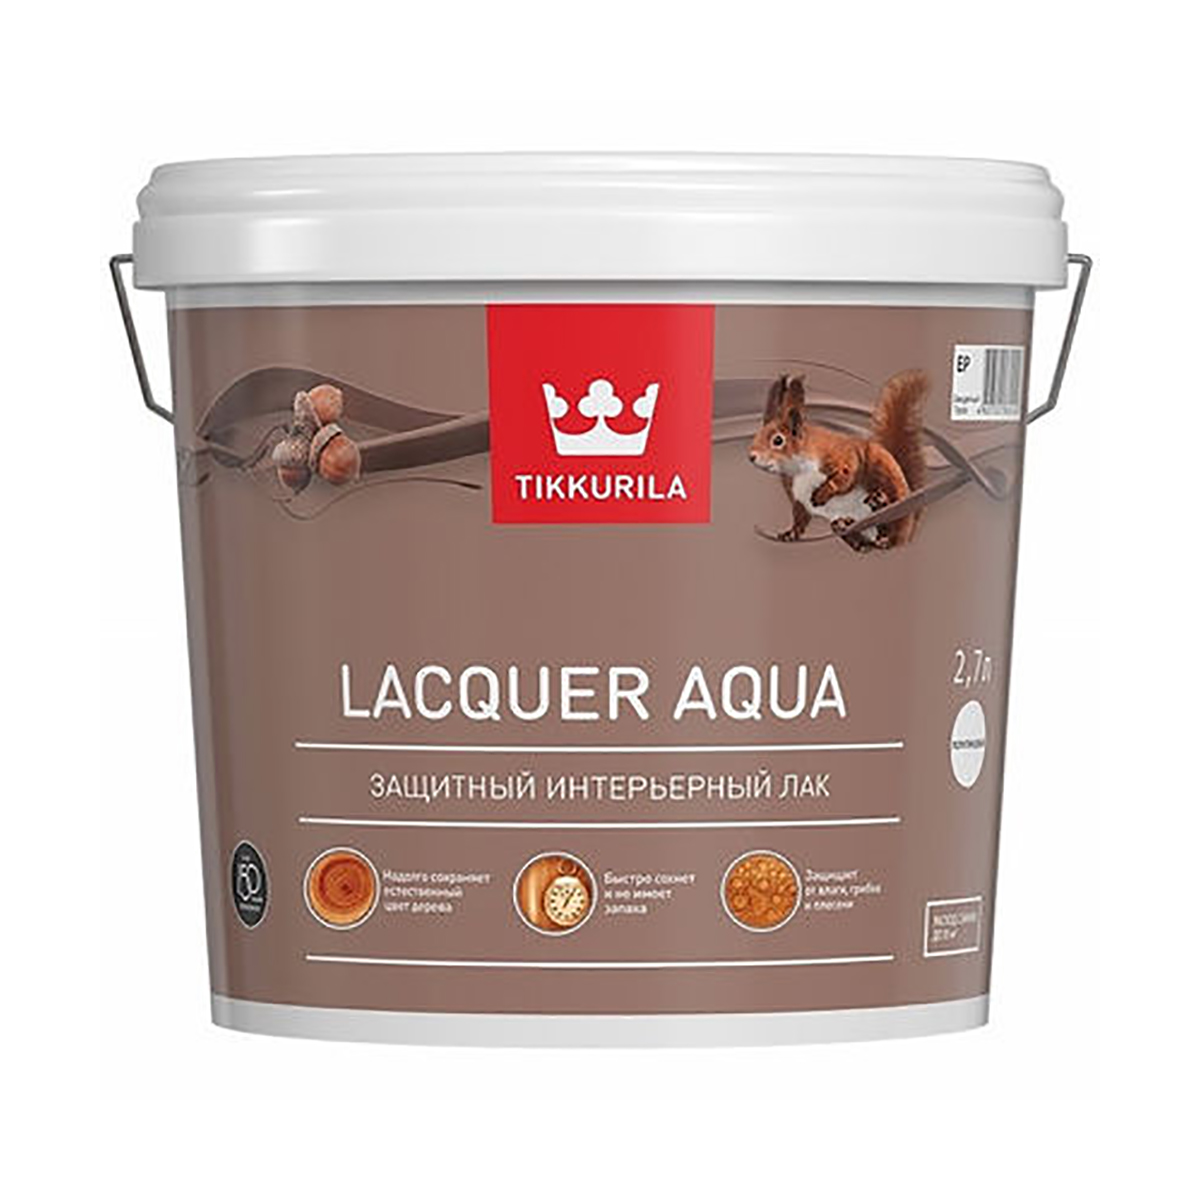 Лак Tikkurila Euro Lacquer Aqua (700001138) бесцветный 2.7л лак интерьерный tikkurila lacquer aqua база ep бес ный полуглянцевый 9 л